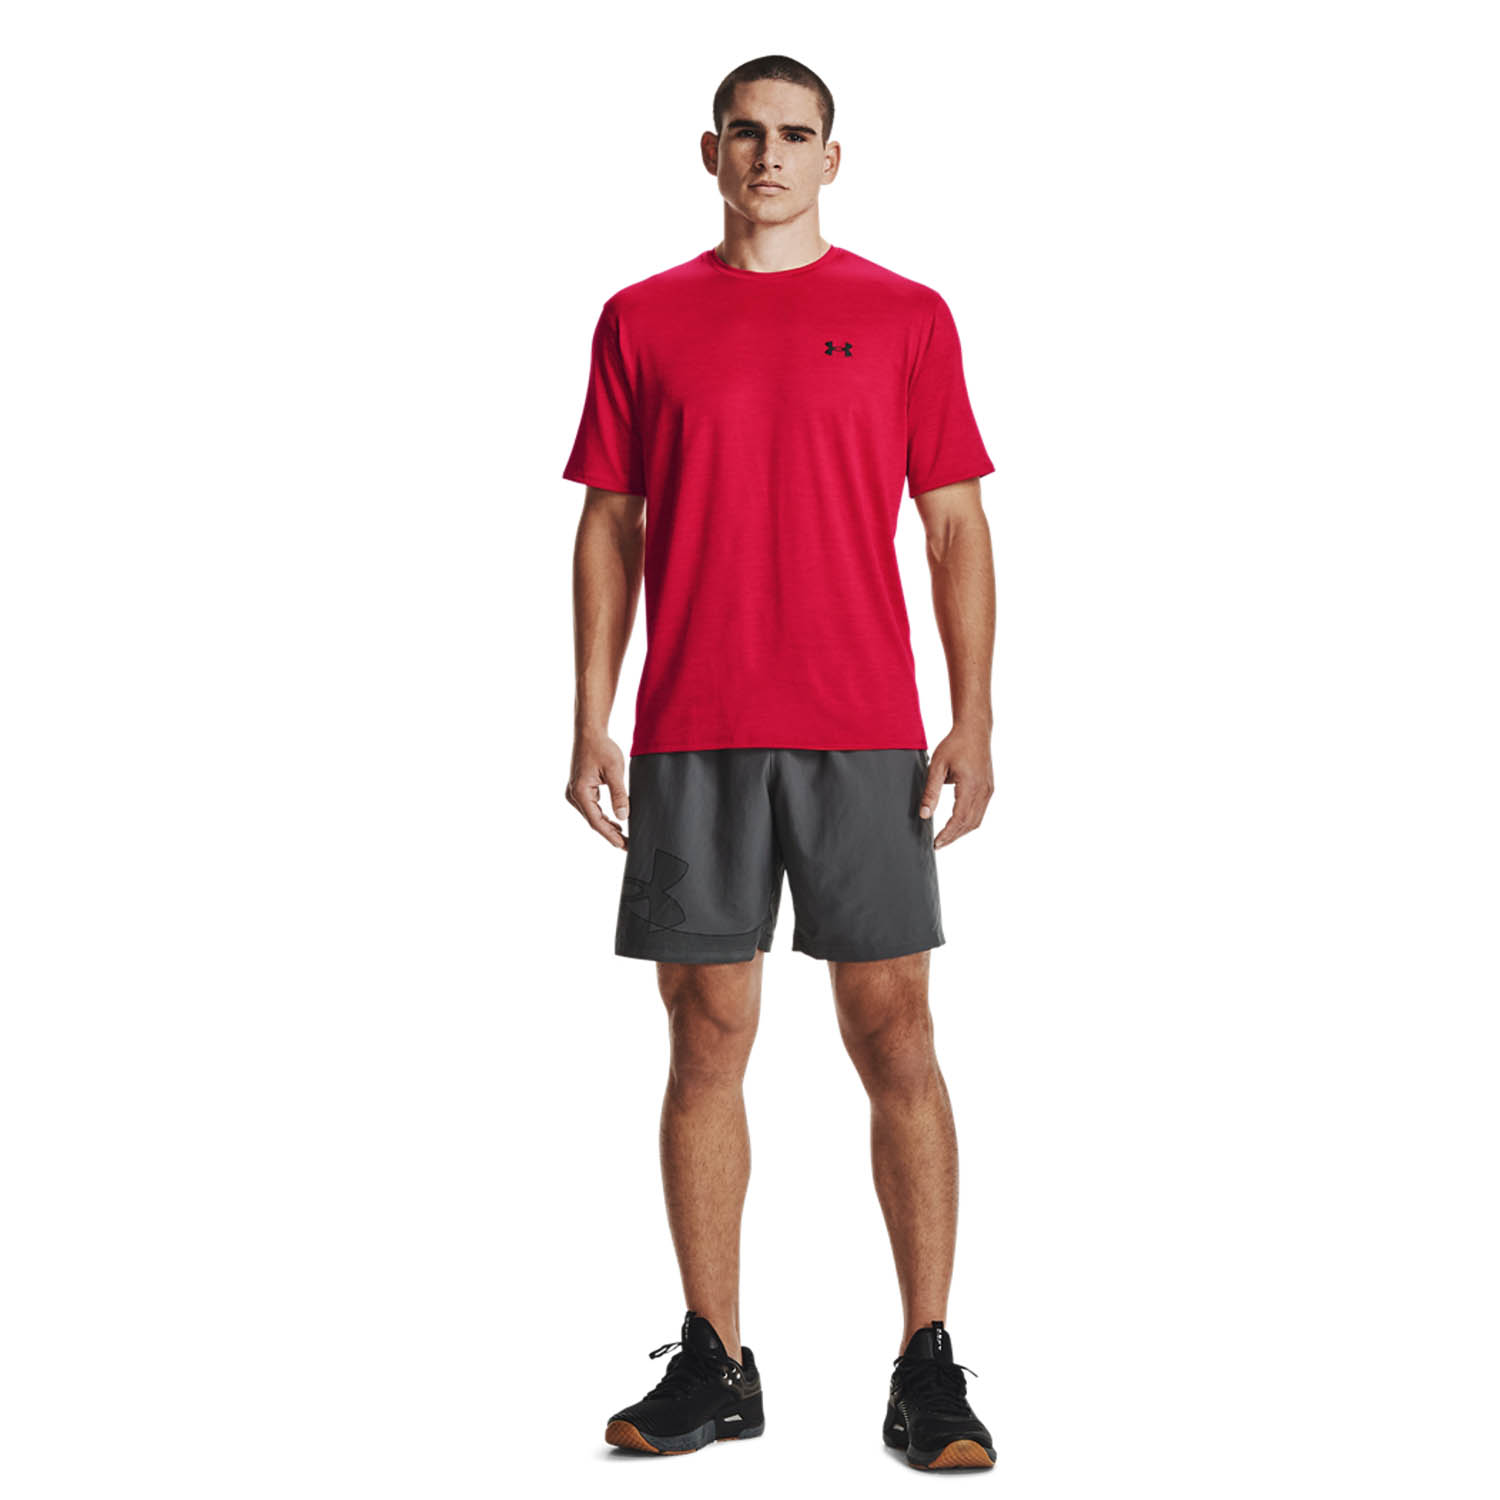 Under Armour Training Vent 2.0 Camiseta Tenis Hombre - Red